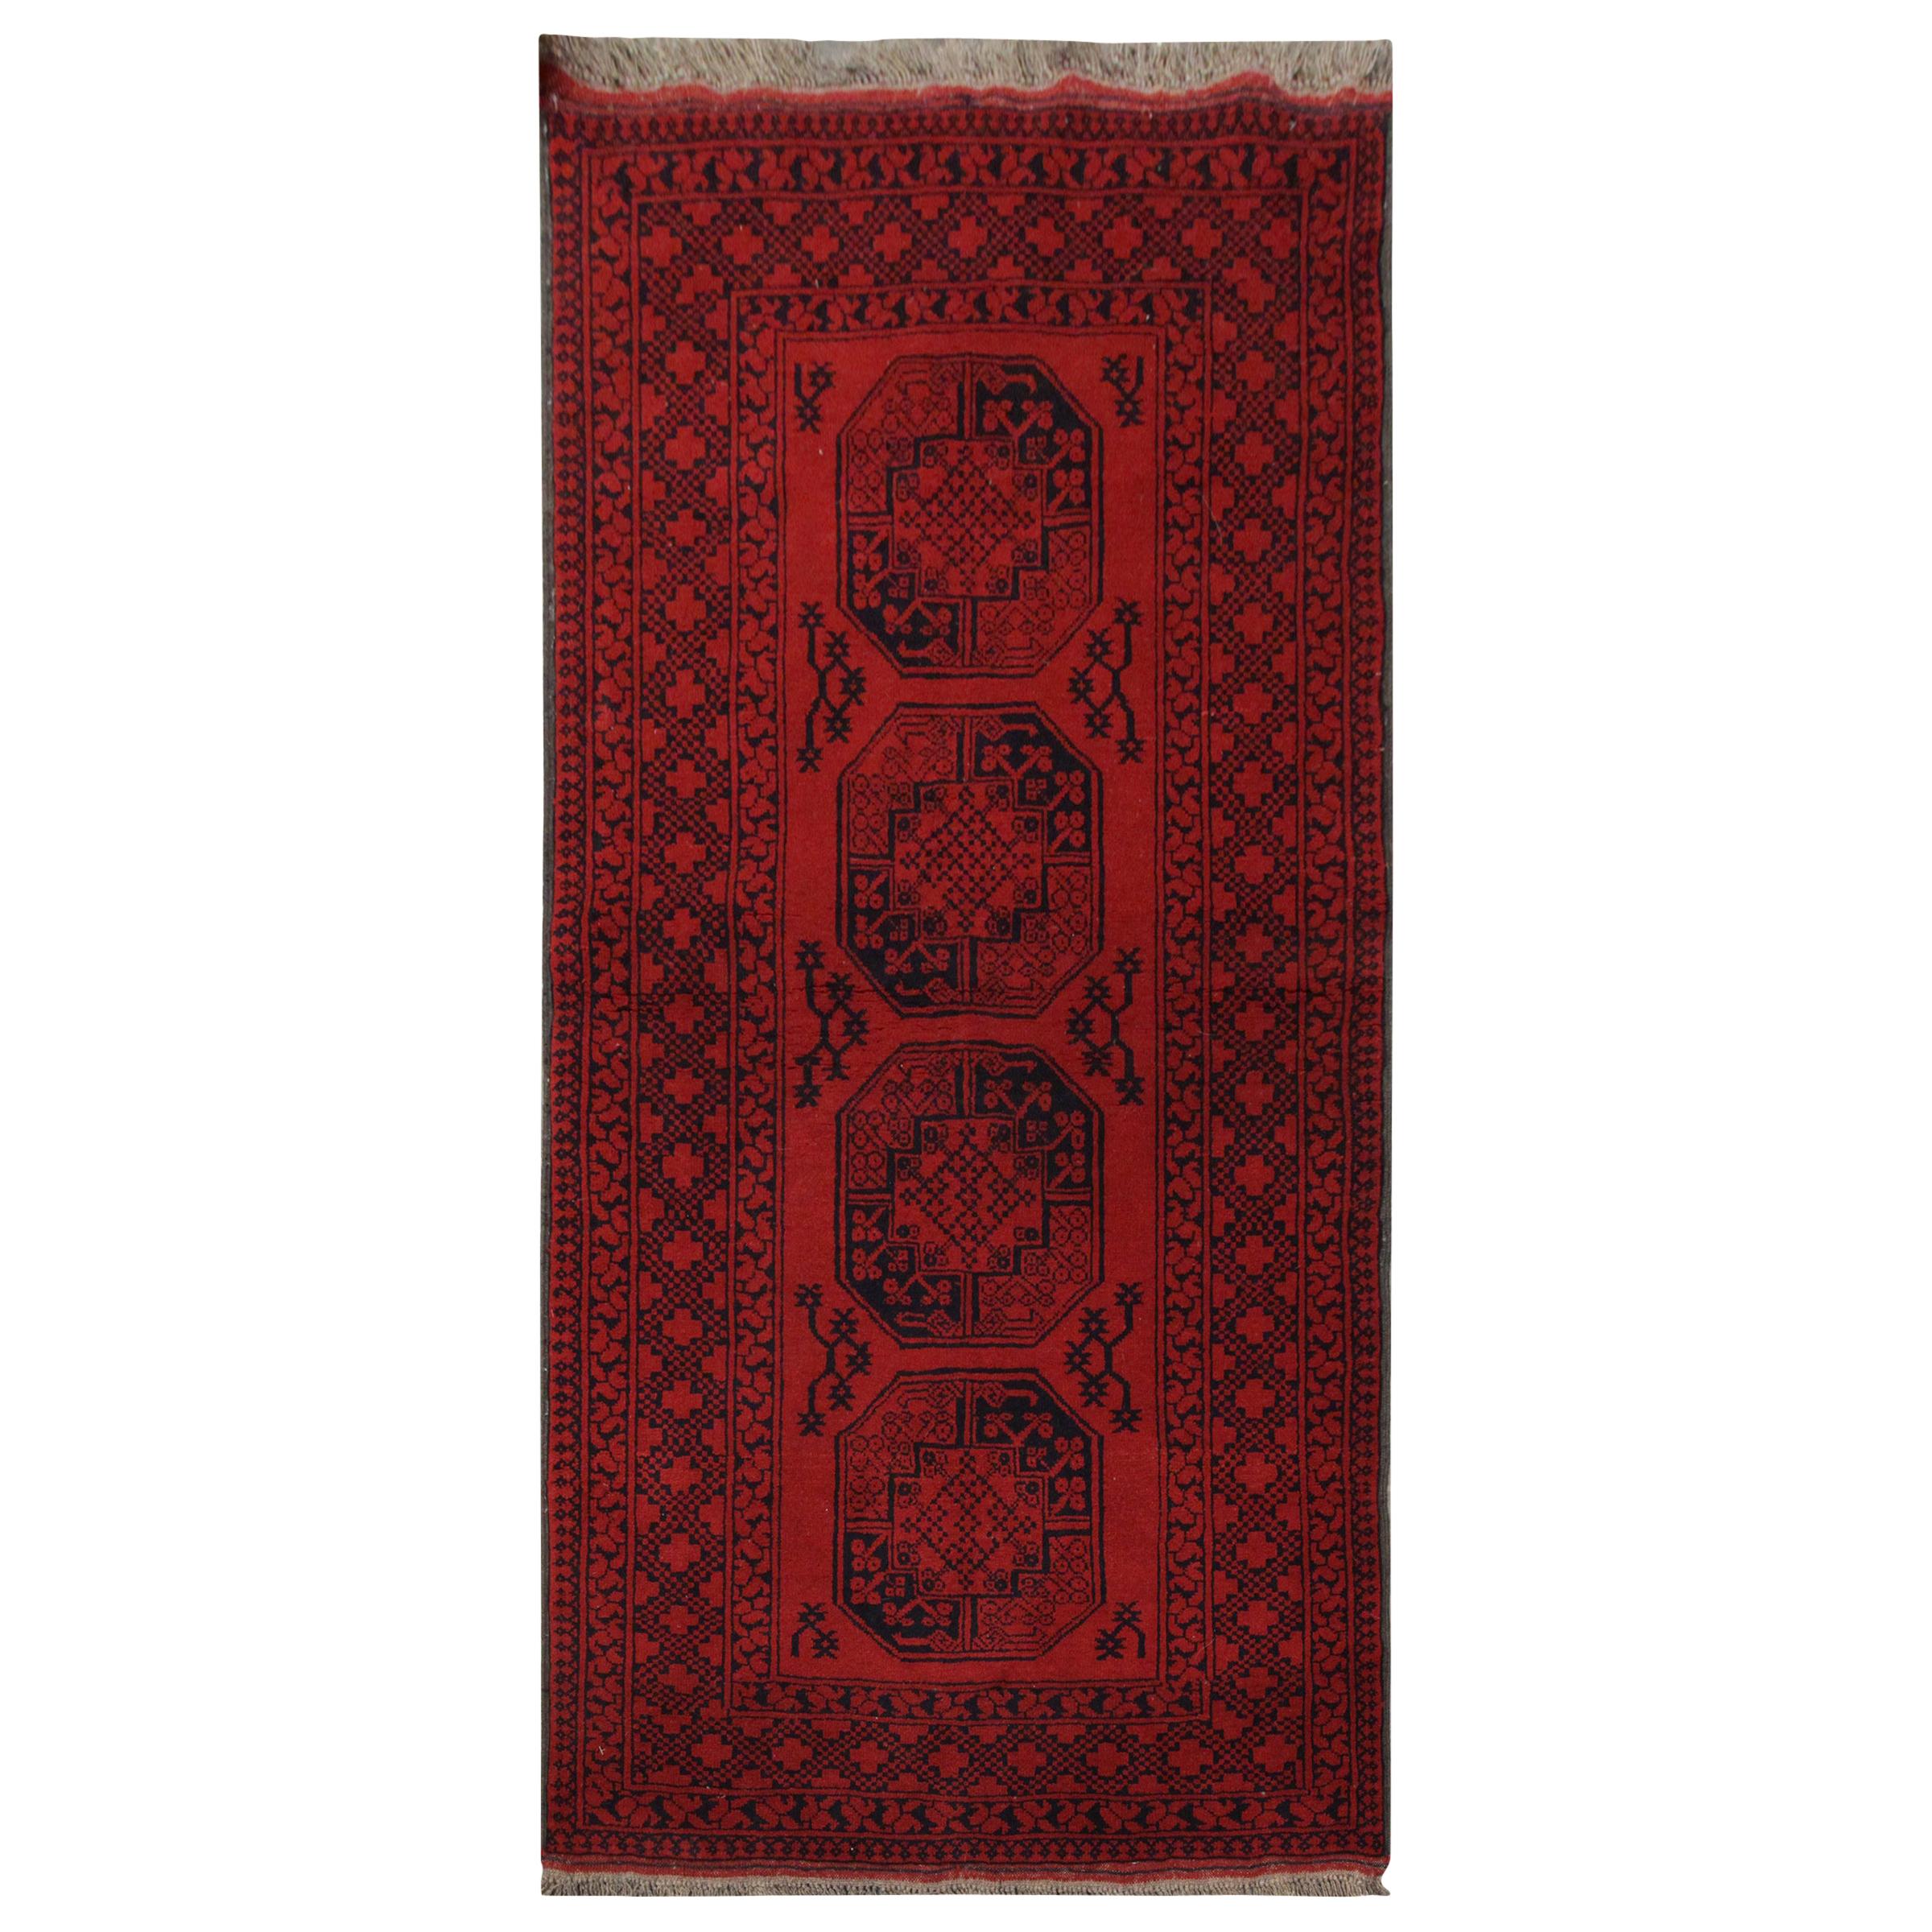 Handmade Carpet Vintage Afghan Oriental Rug, Rustic Red Living Room Rug For Sale